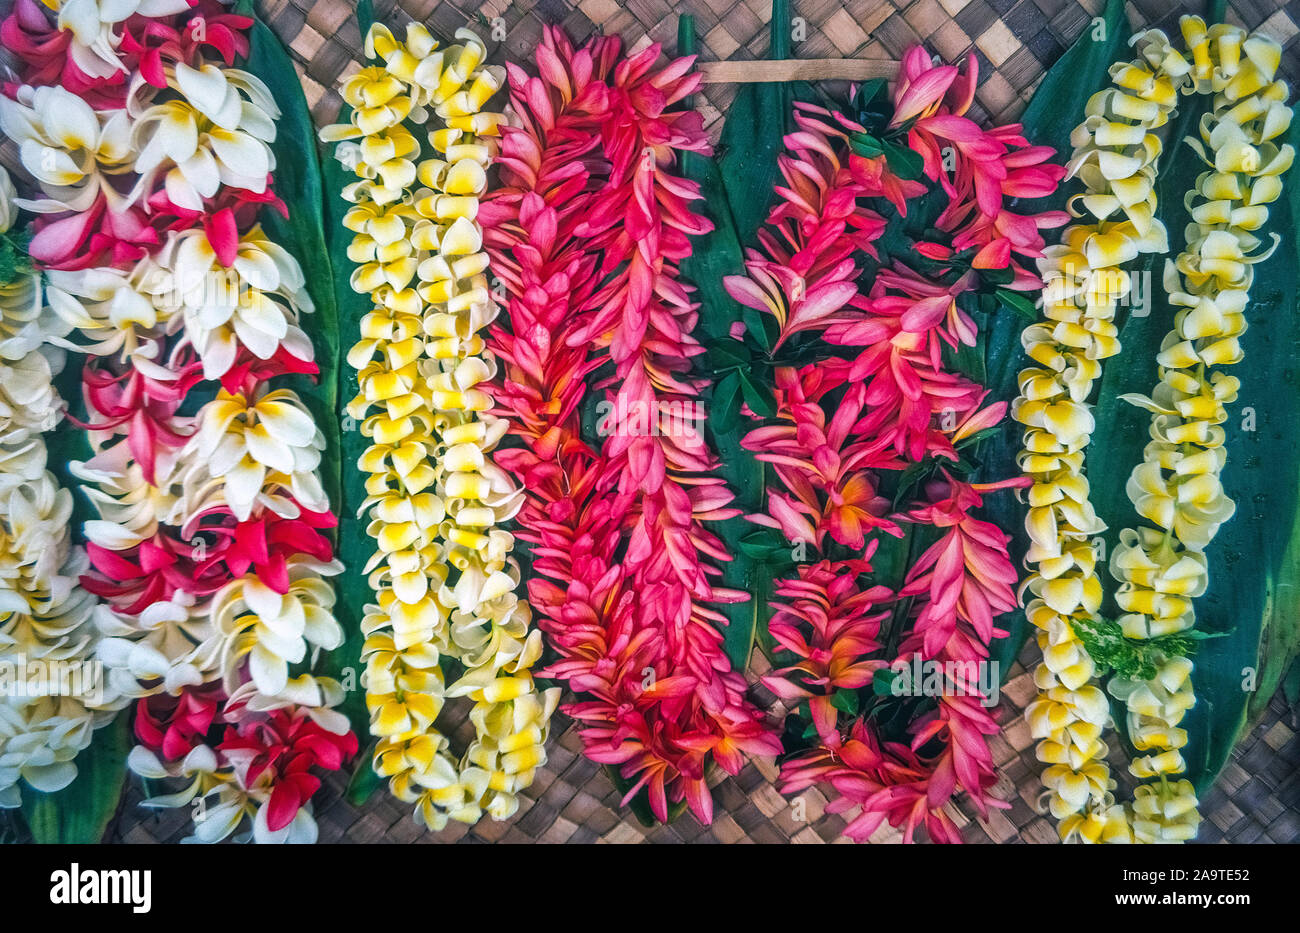 Zeichenfolgen der frische Blumenkränze von vielen bunten Sorten sind in Lei-maker Ständen verkauft und anschließend um die Hälse von Freunden oder der Familie zu sagen "Aloha" (hallo oder Auf Wiedersehen) als traditionelle Begrüßung oder Verabschiedung in den Pazifischen Inseln von Hawaii, USA. Orchideen und plumeria (FRANGIPANI) gehören zu den beliebtesten tropischen Blüten verwendet Blumenketten, lange haben die iconic Symbol der hawaiianischen Gastfreundschaft und Liebe zu machen. Stockfoto